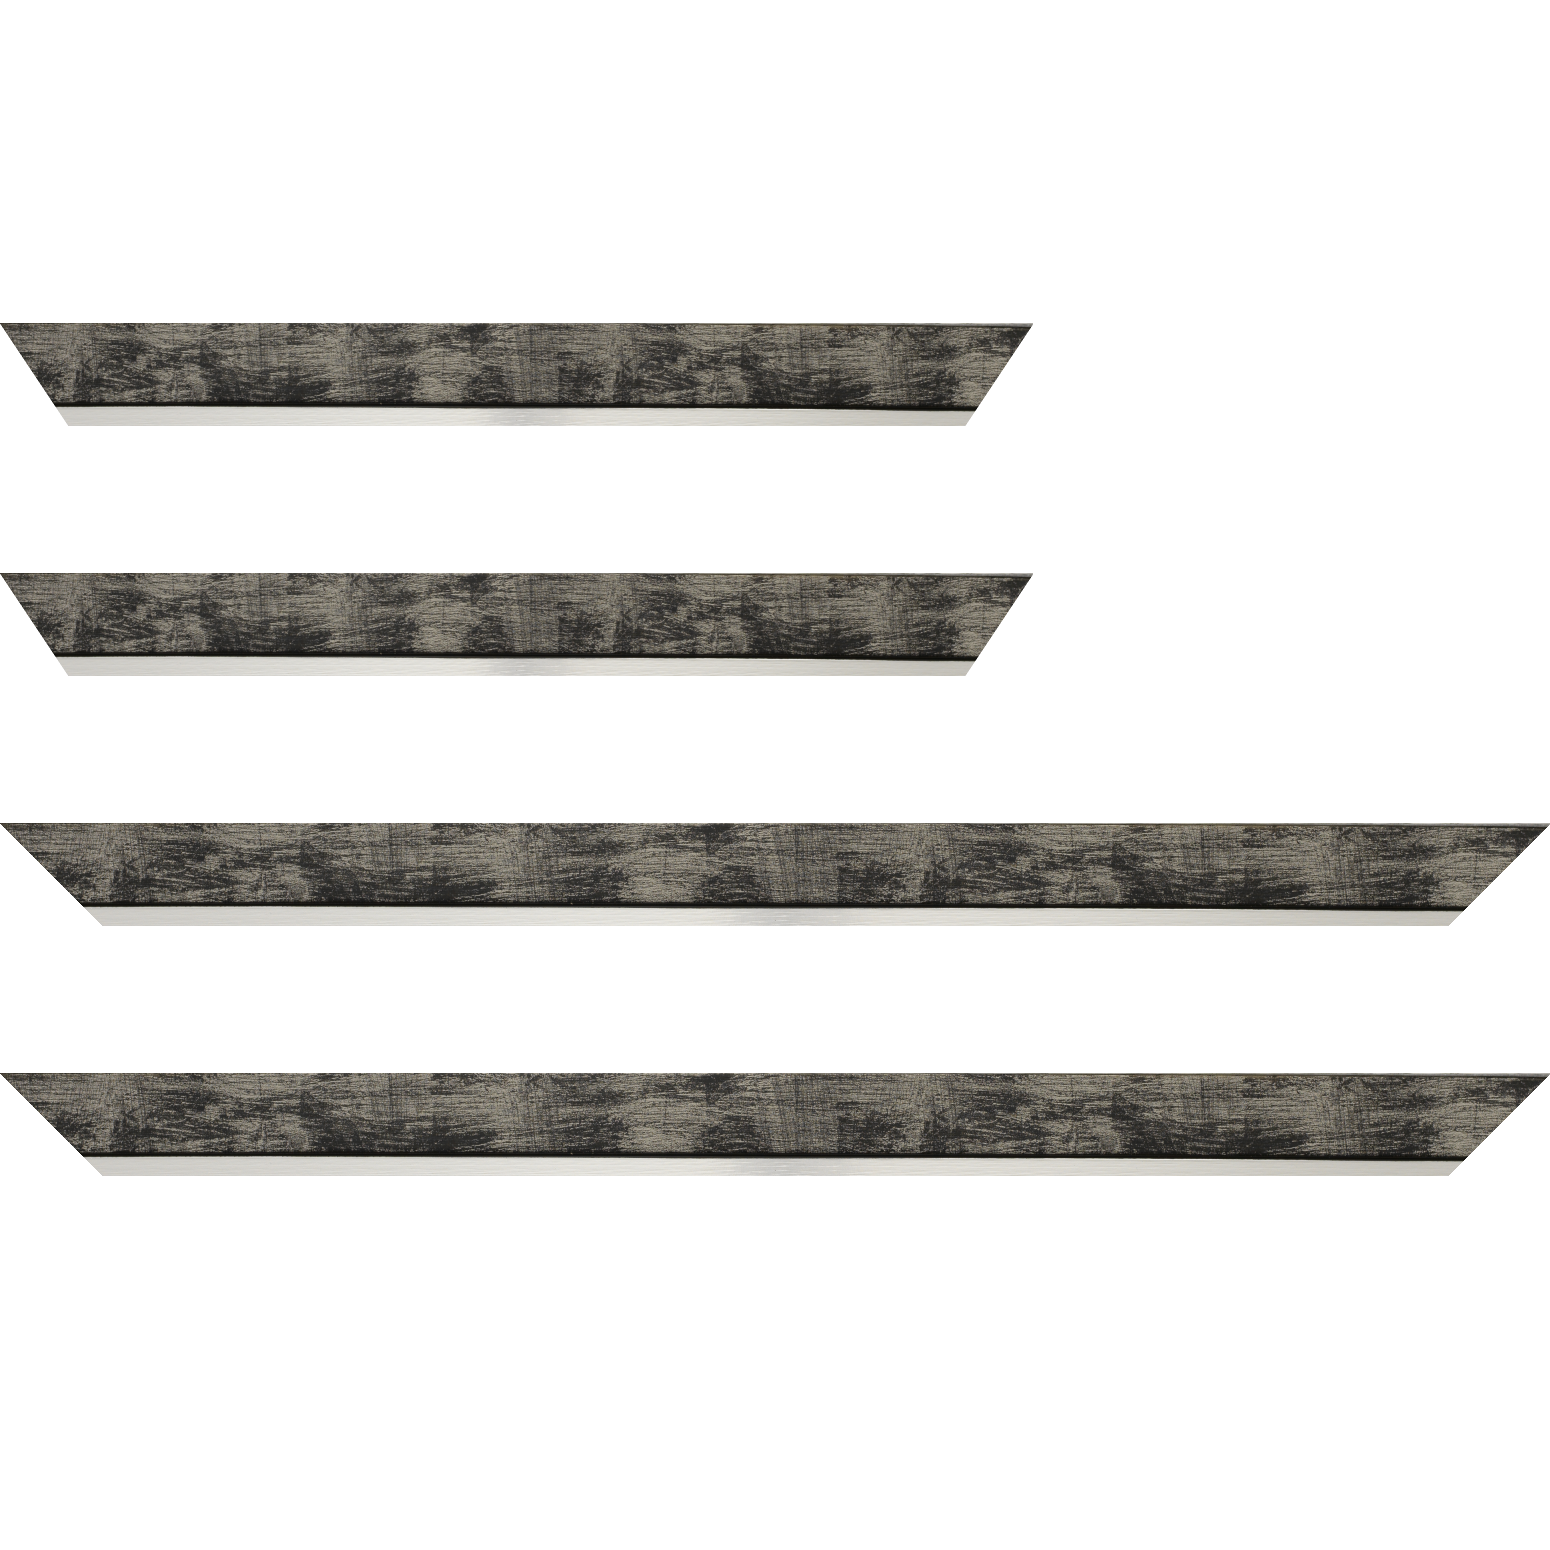 Baguette bois profil plat largeur 3.3cm couleur noir fond argent filet argent - 35x24